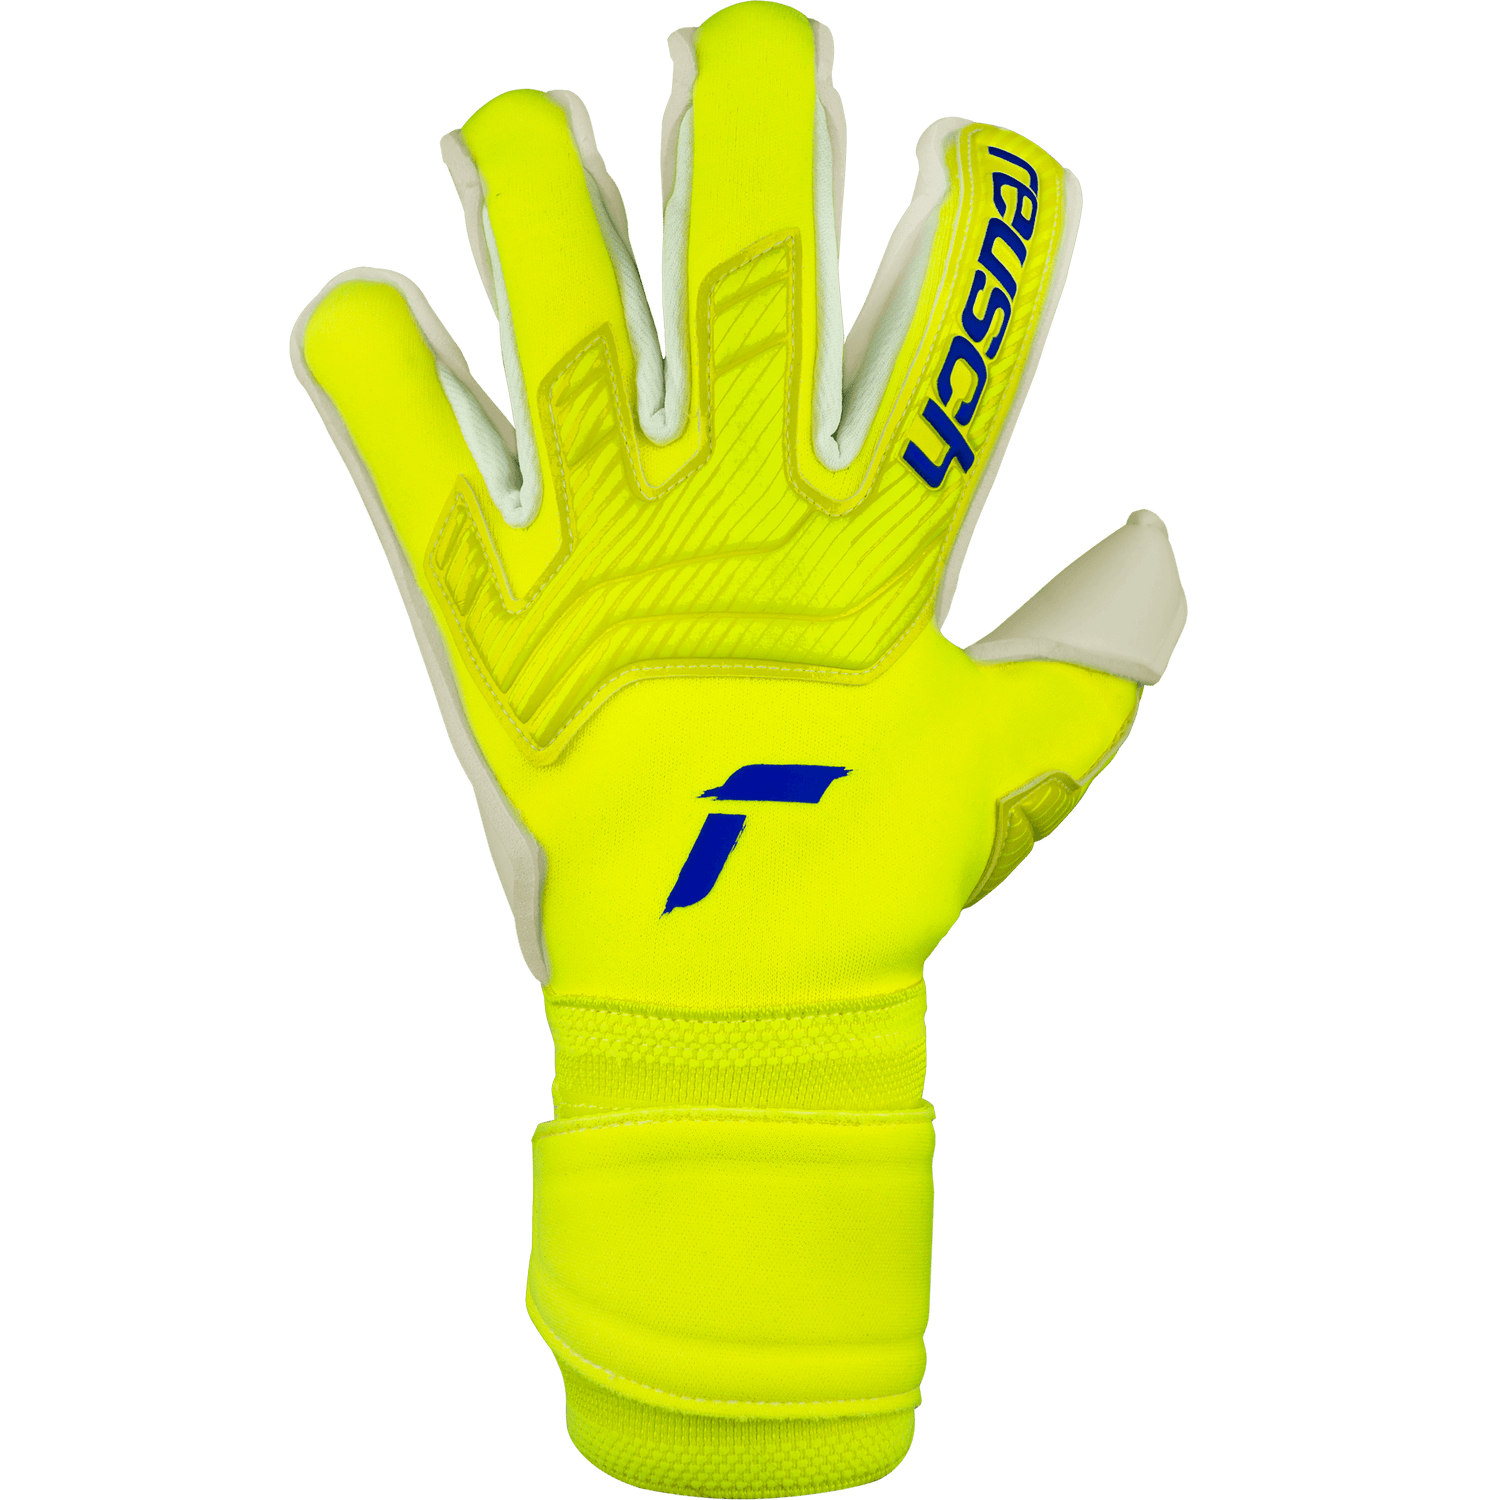 Reusch Attrakt Gold X Alpha Goalkeeper Gloves - Yellow-Blue-White (Single - Outer)